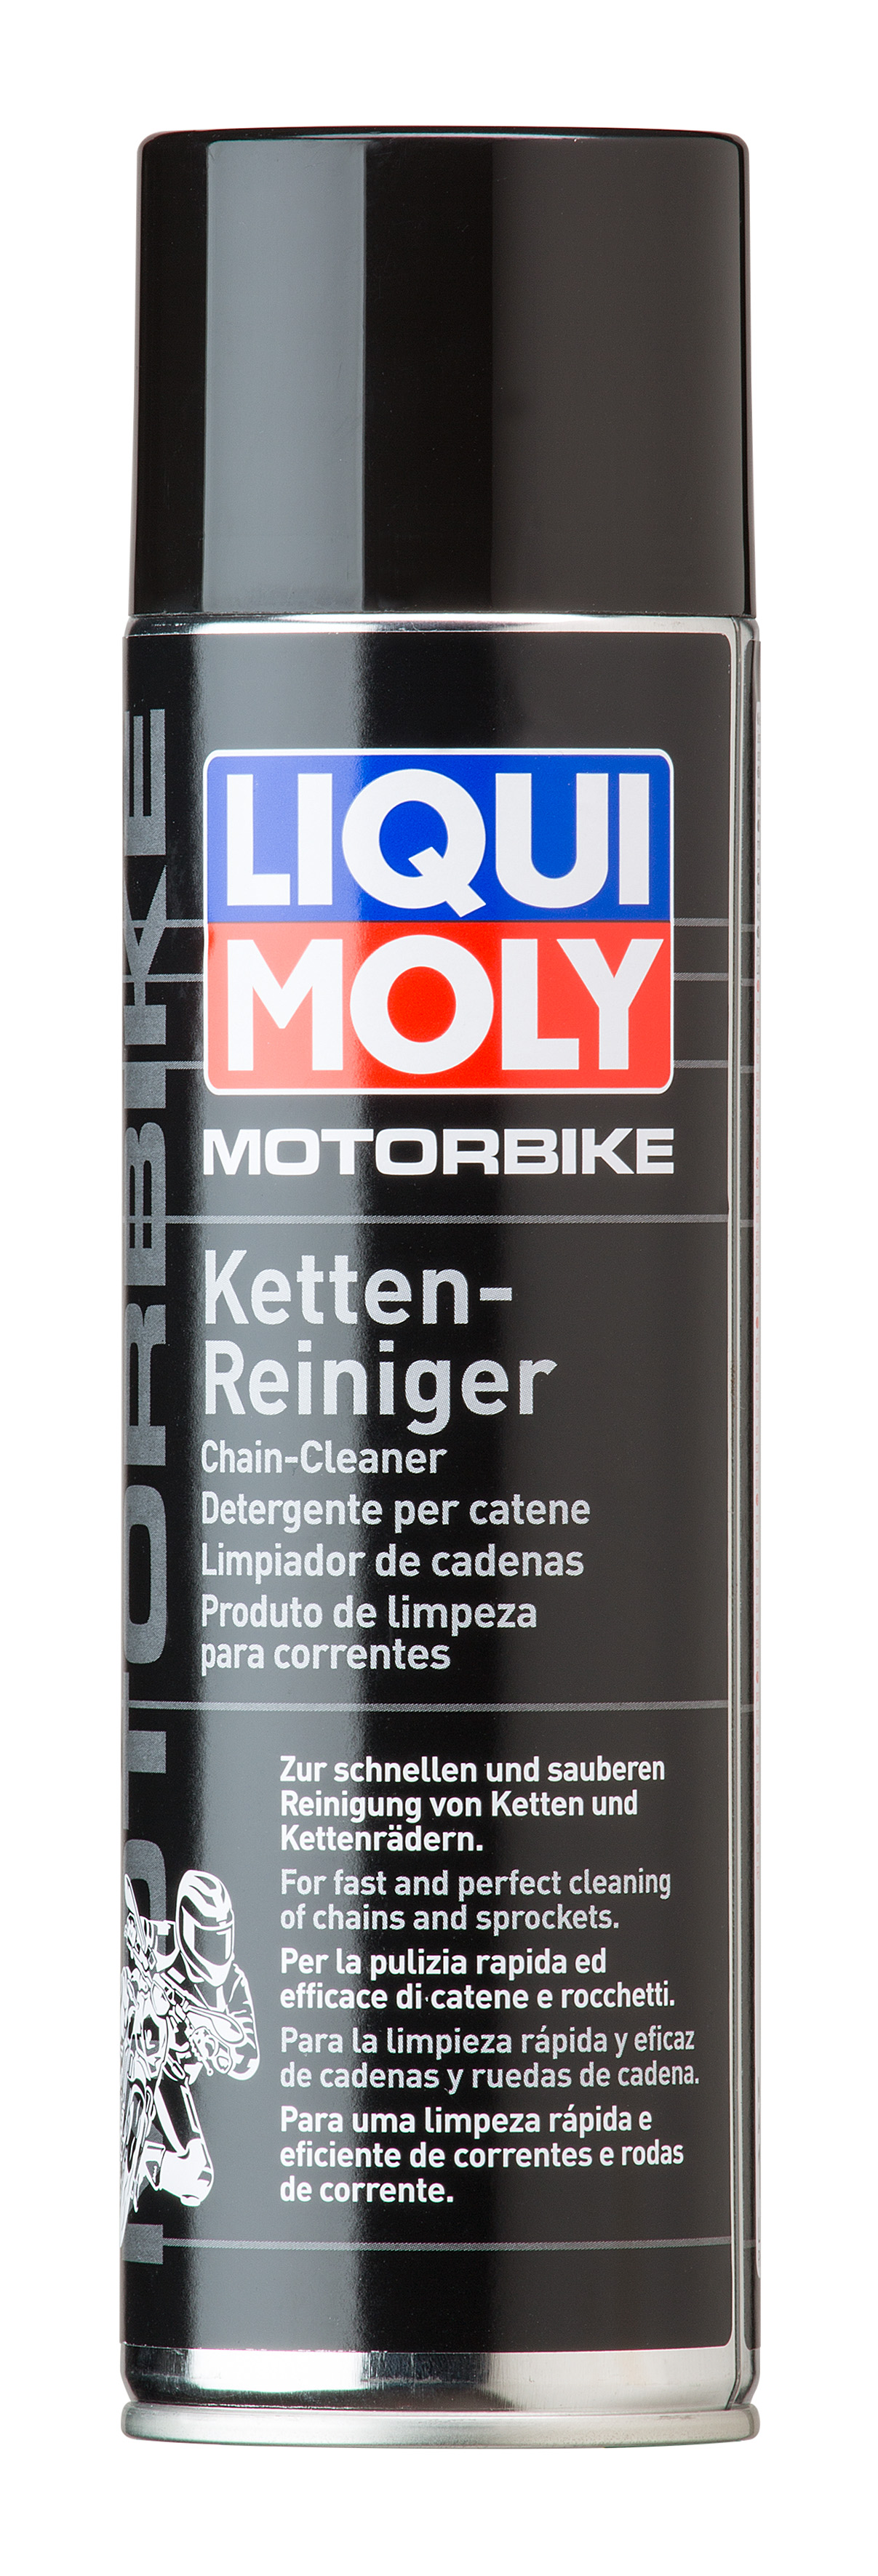 Очиститель приводной цепи и тормозов мотоцикла Motorbike Ketten- und Bremsenreiniger, 500мл - Liqui Moly 7625